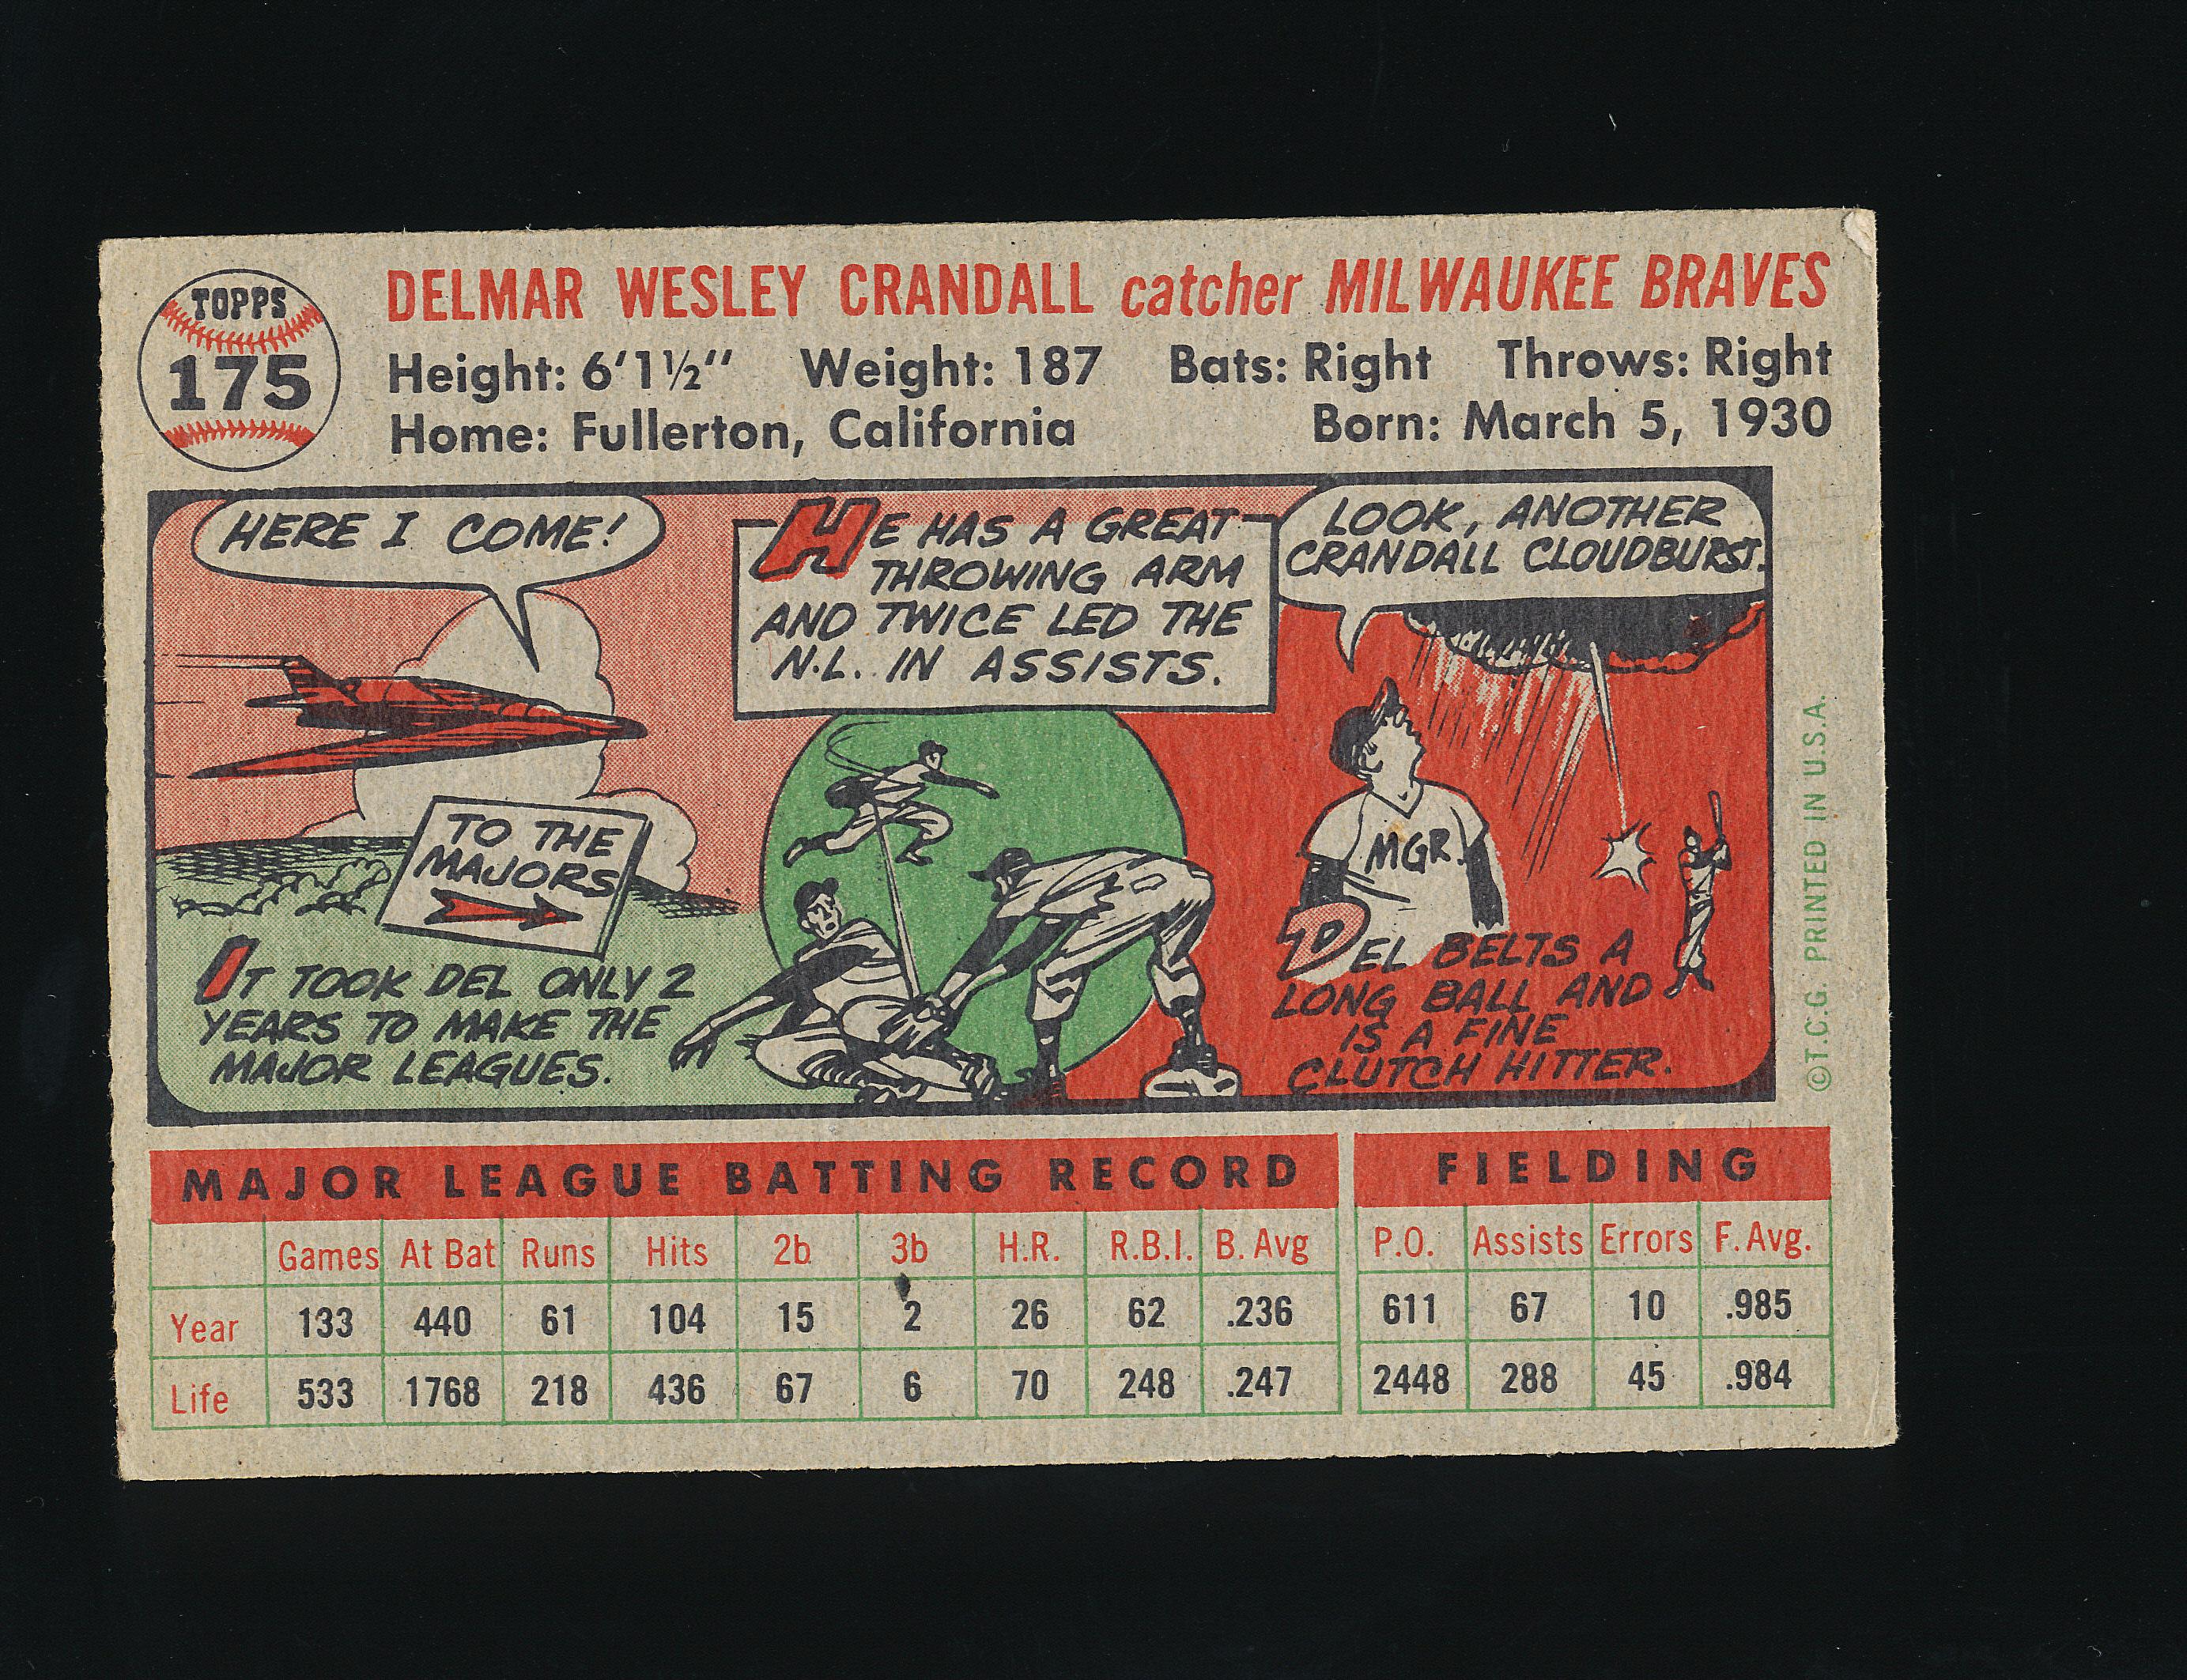 1956 Topps Baseball Card #175 Del Crandell Milwaukee Braves